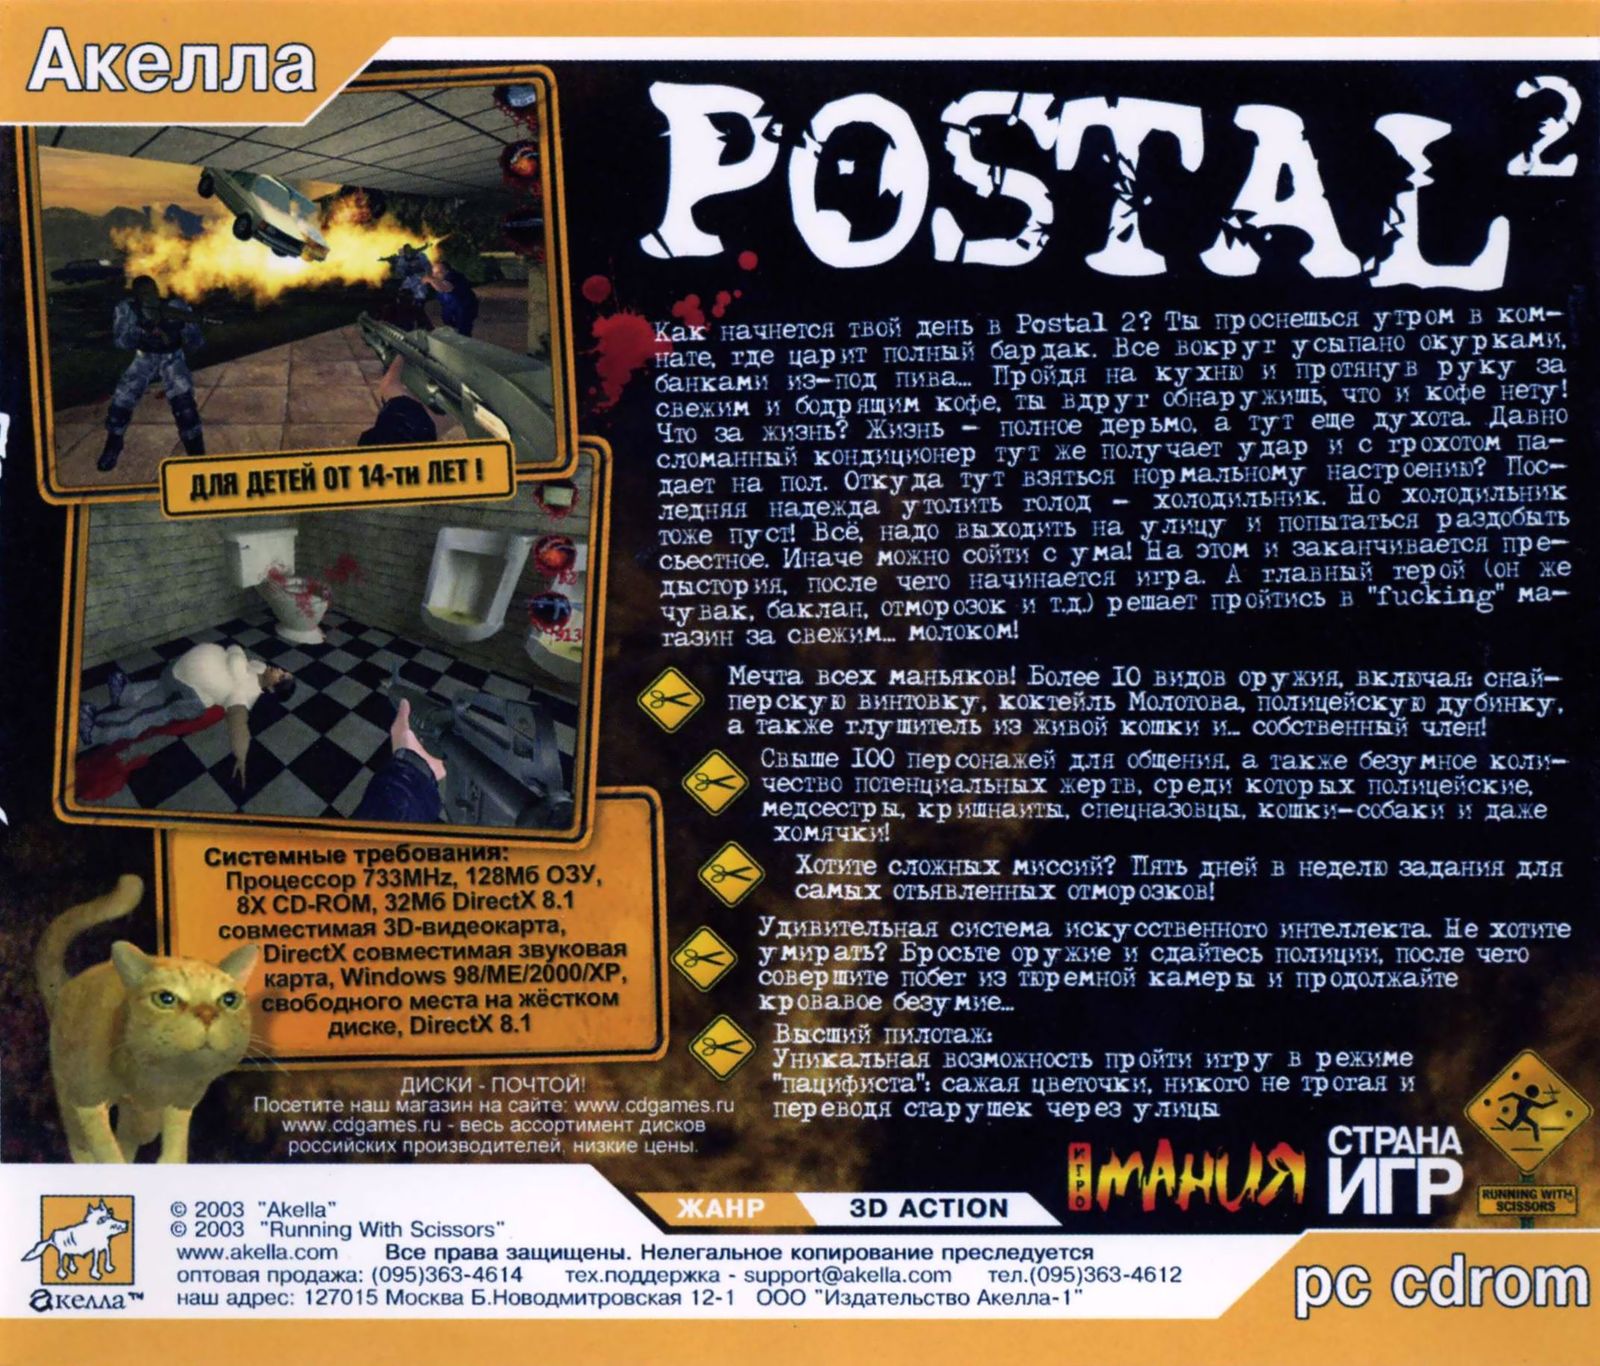 Postal 2 awp delete review торрент фото 47